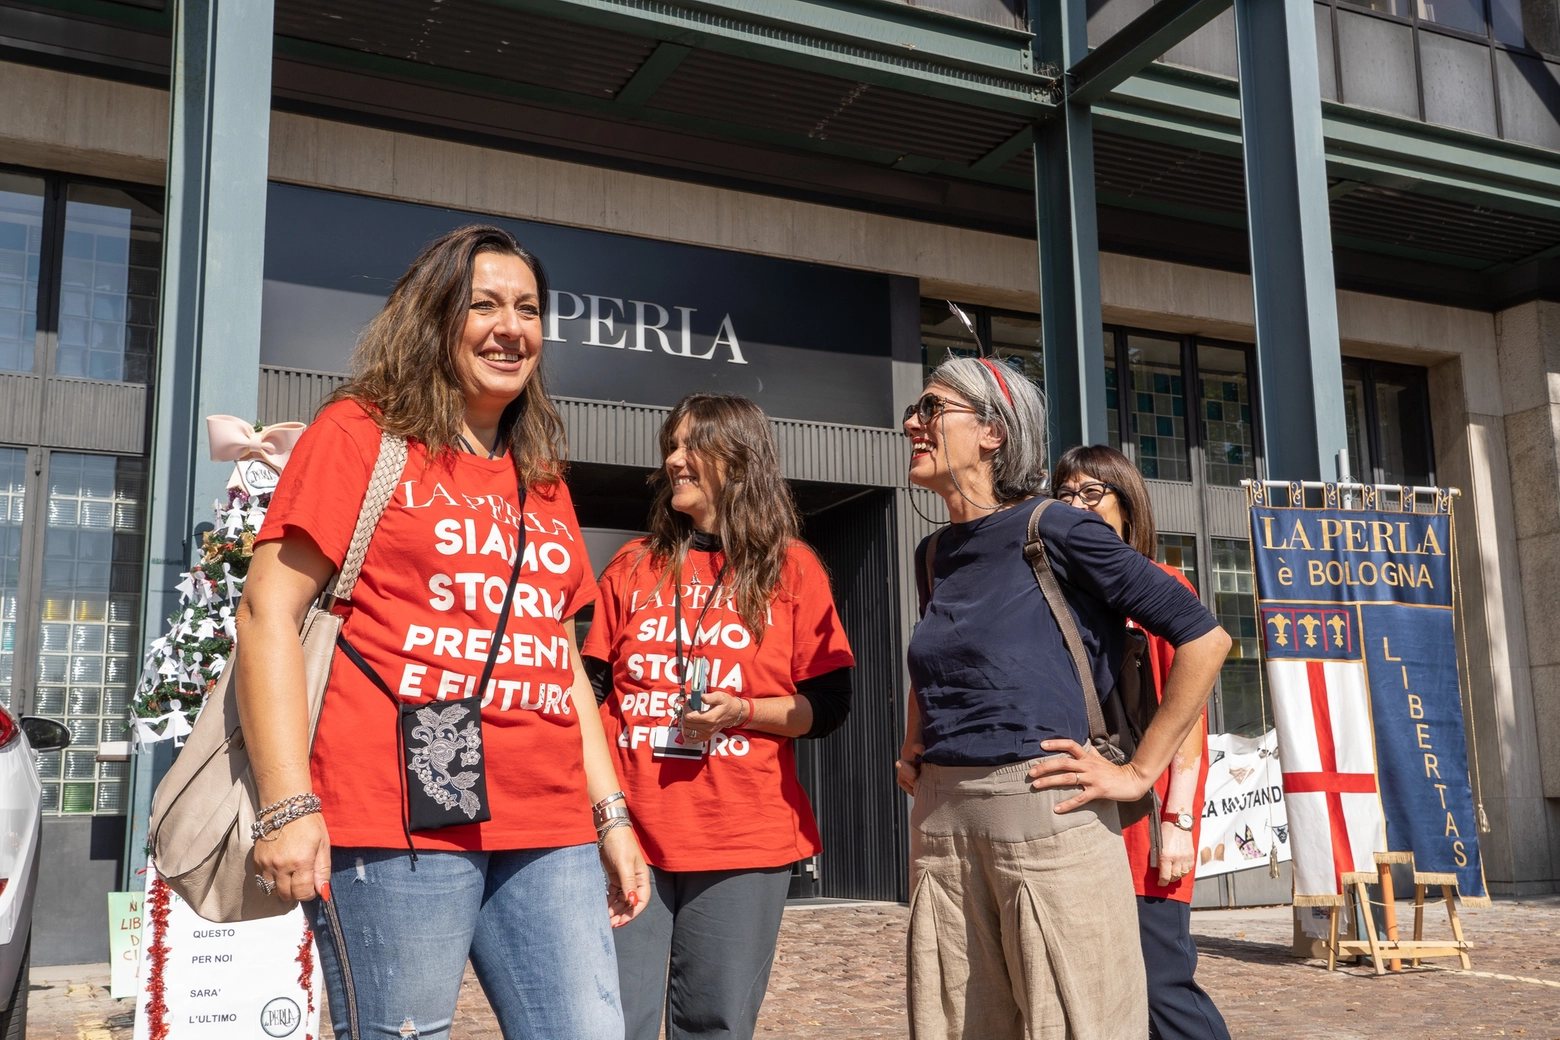 Una delle manifestazioni di protesta delle lavoratrici de La Perla in via Mattei